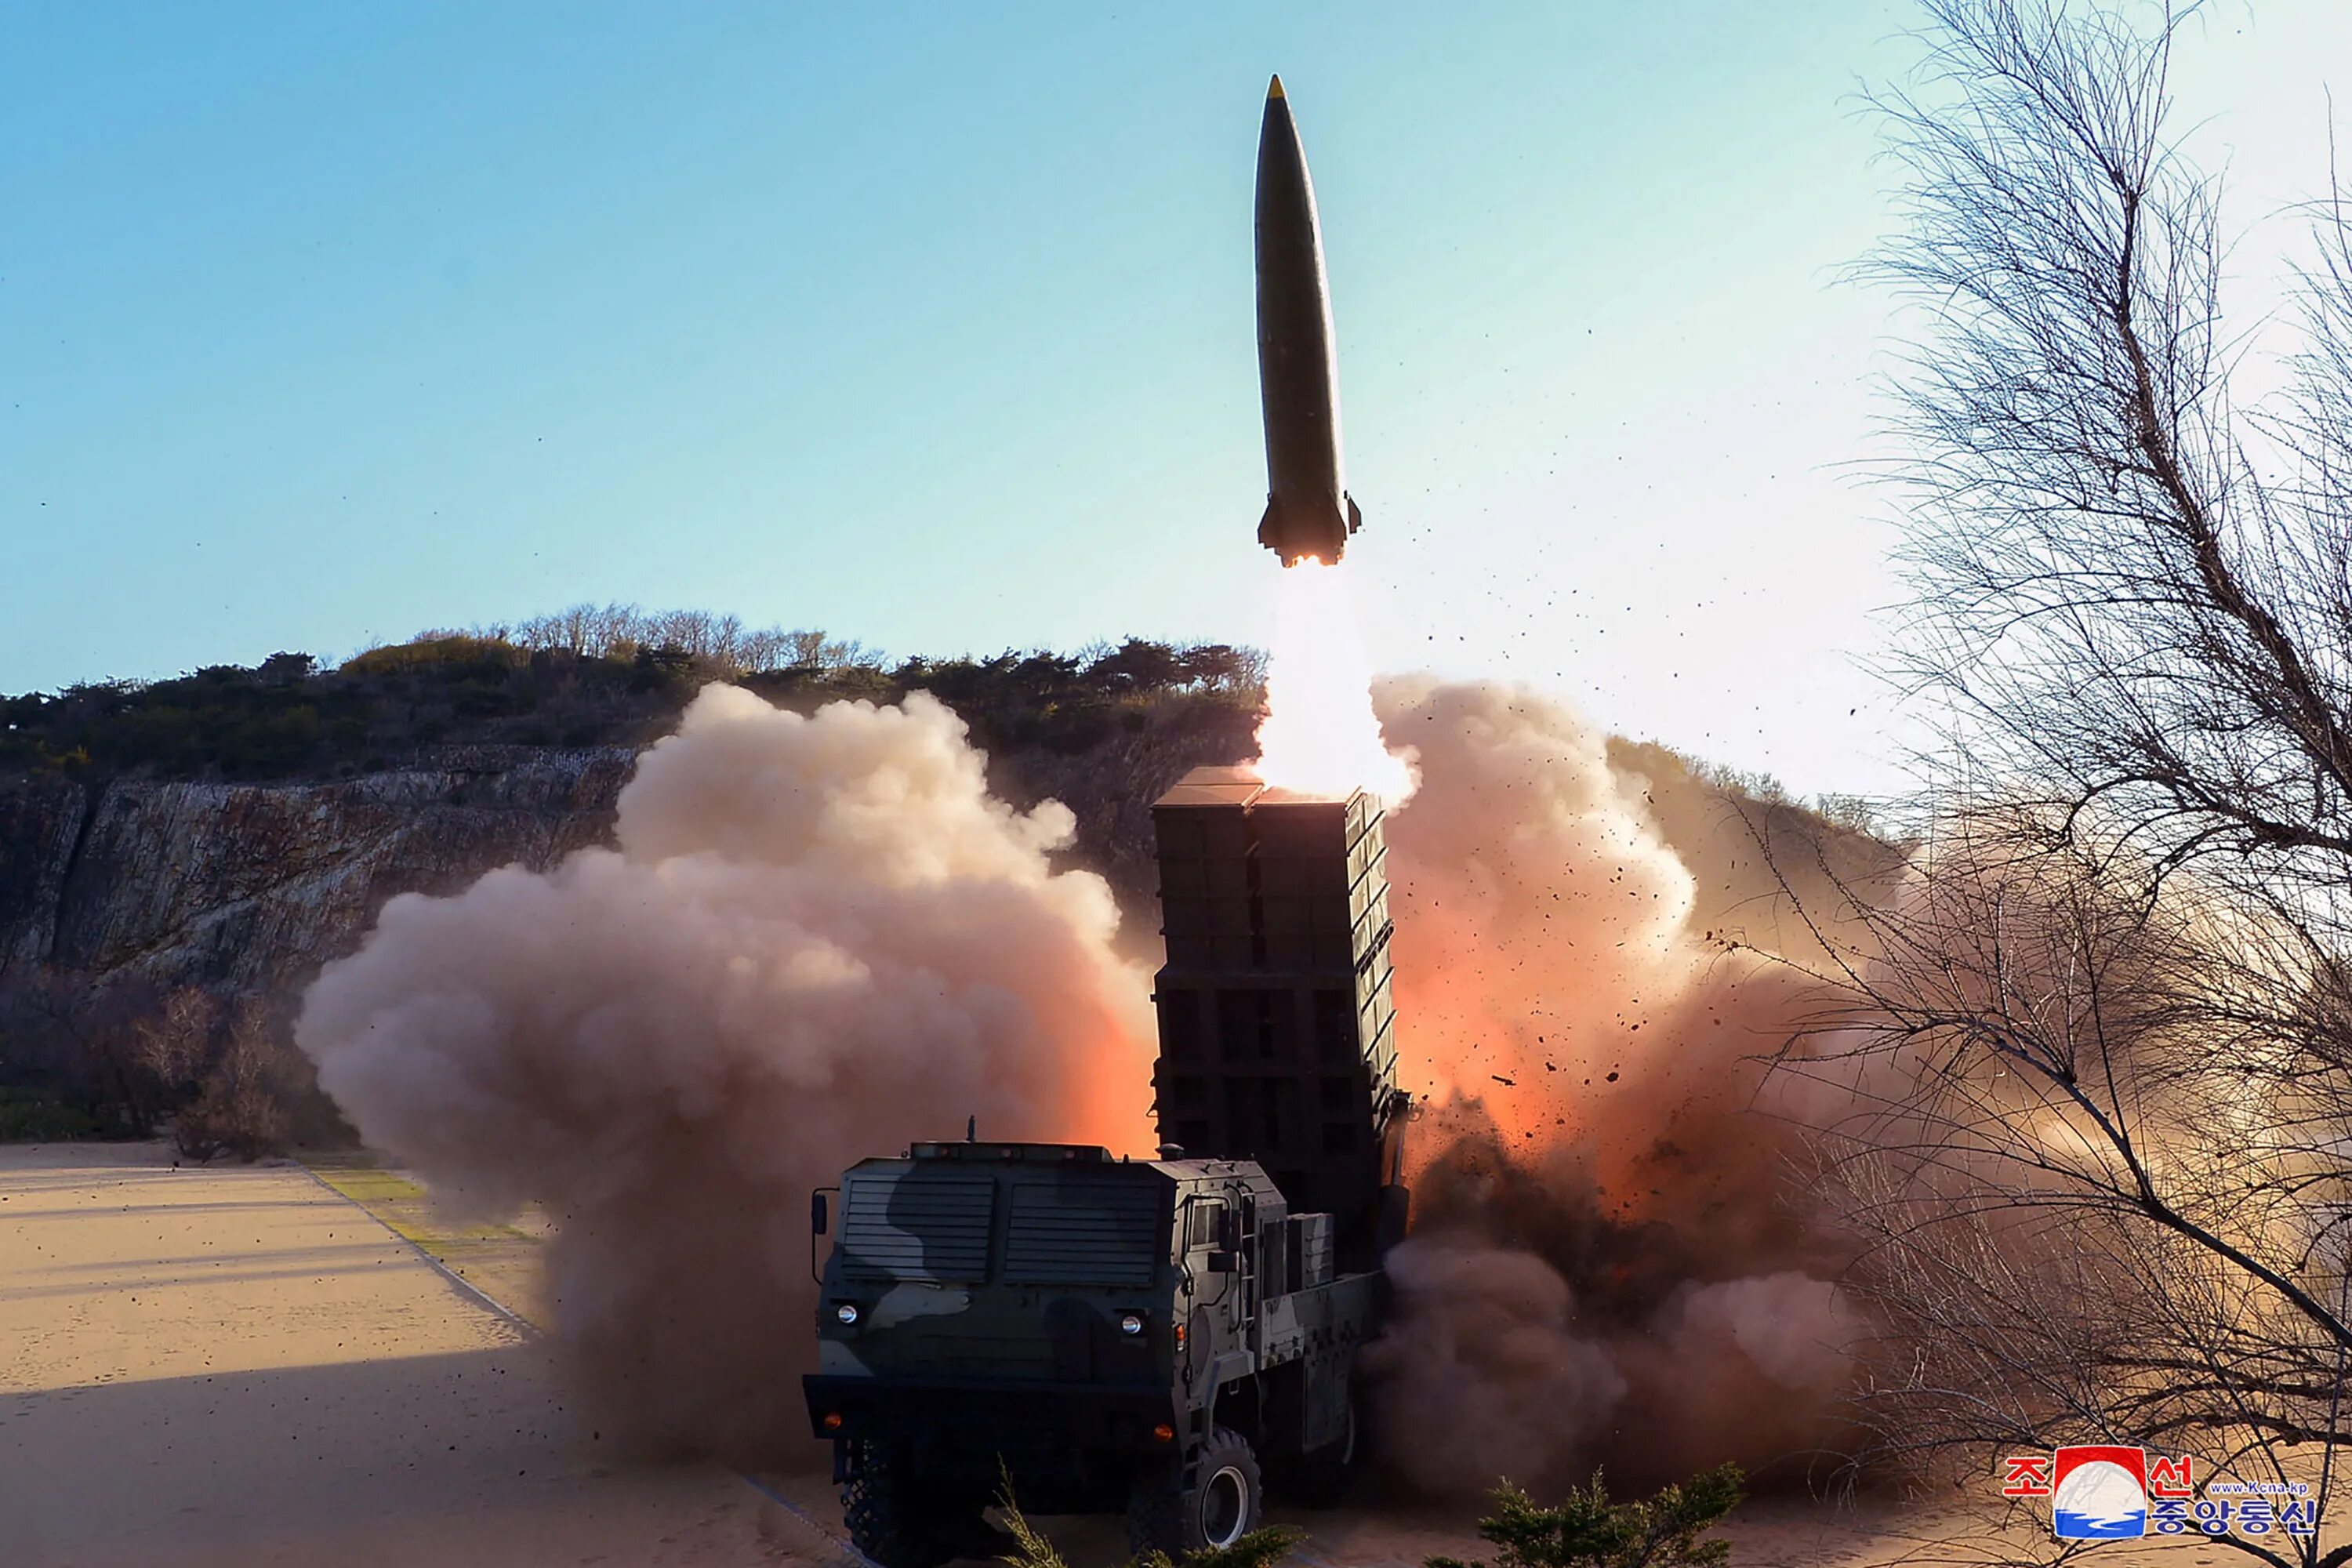 Нато нанесет ядерный удар. KN-23 ракета КНДР. Баллистические ракеты Северной Кореи.